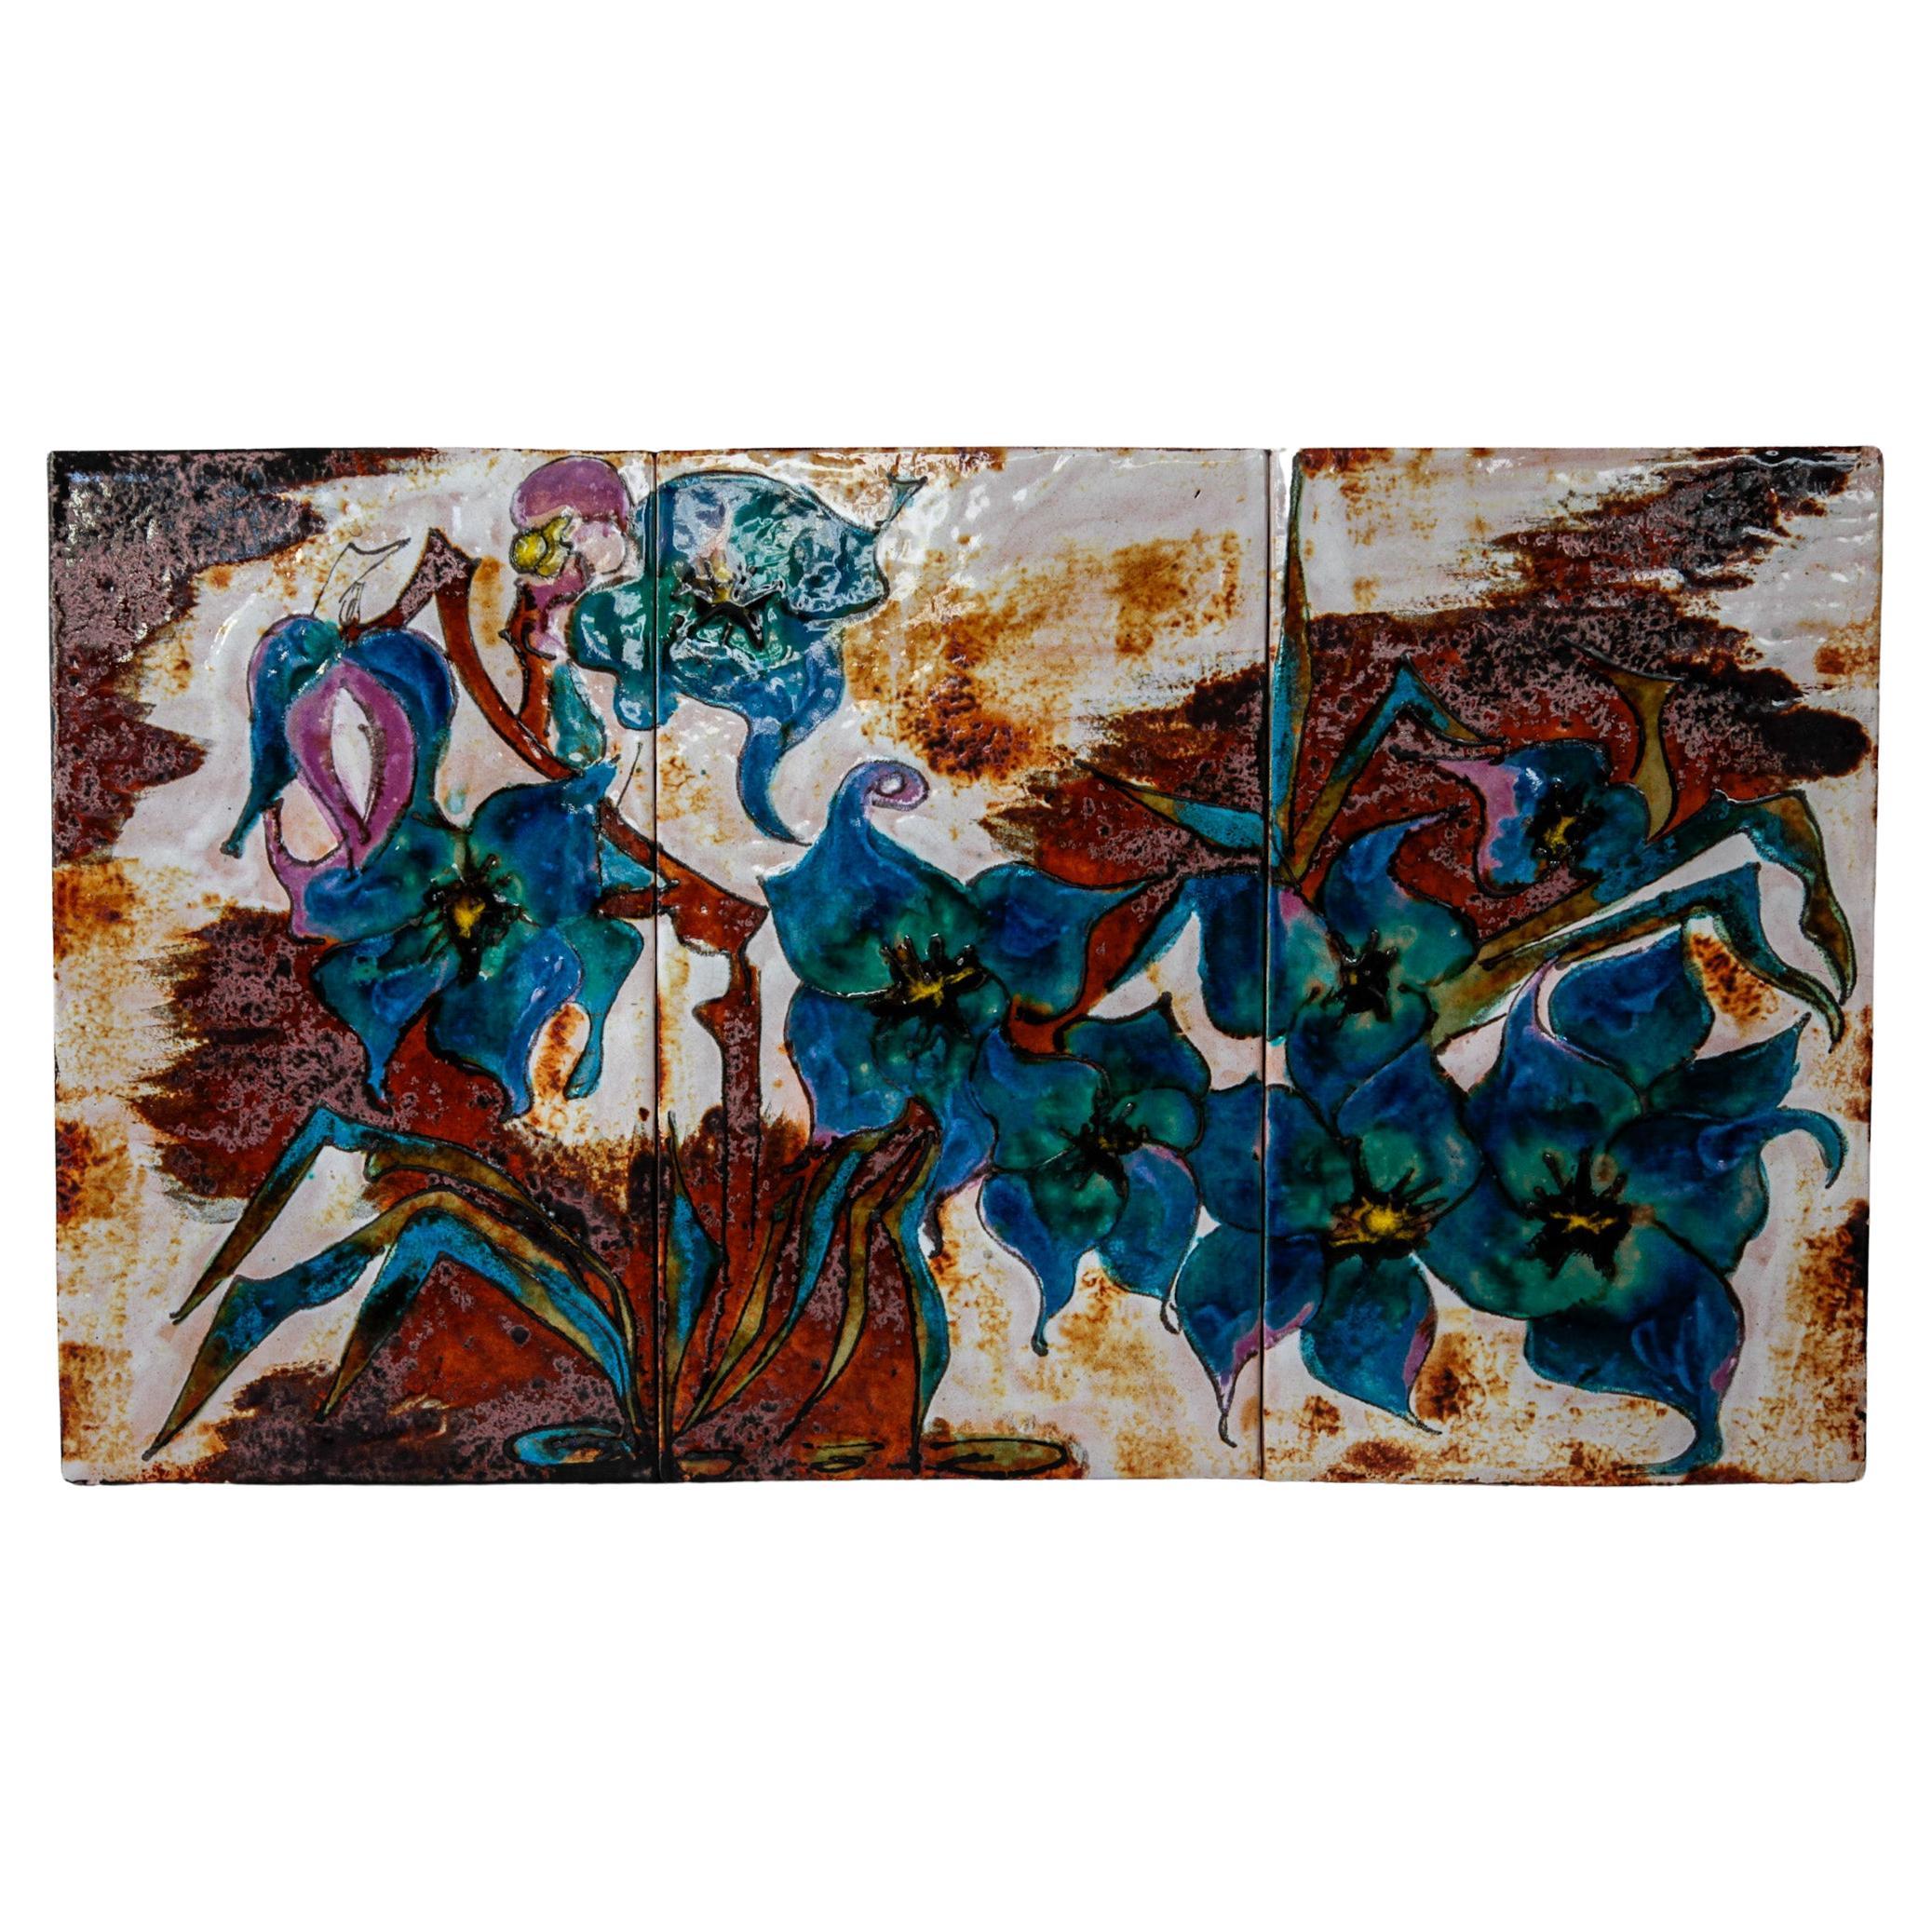 Unglaublich schönes Blumenarrangement auf einer Keramikfliese mit einem Glanz aus Glasur in den leuchtenden Farben Blau, Rosa und Braun. Drei separat gebrannte Kacheln auf einem Holzrahmen montiert. Diese große Keramikplatte wurde in den 1960er